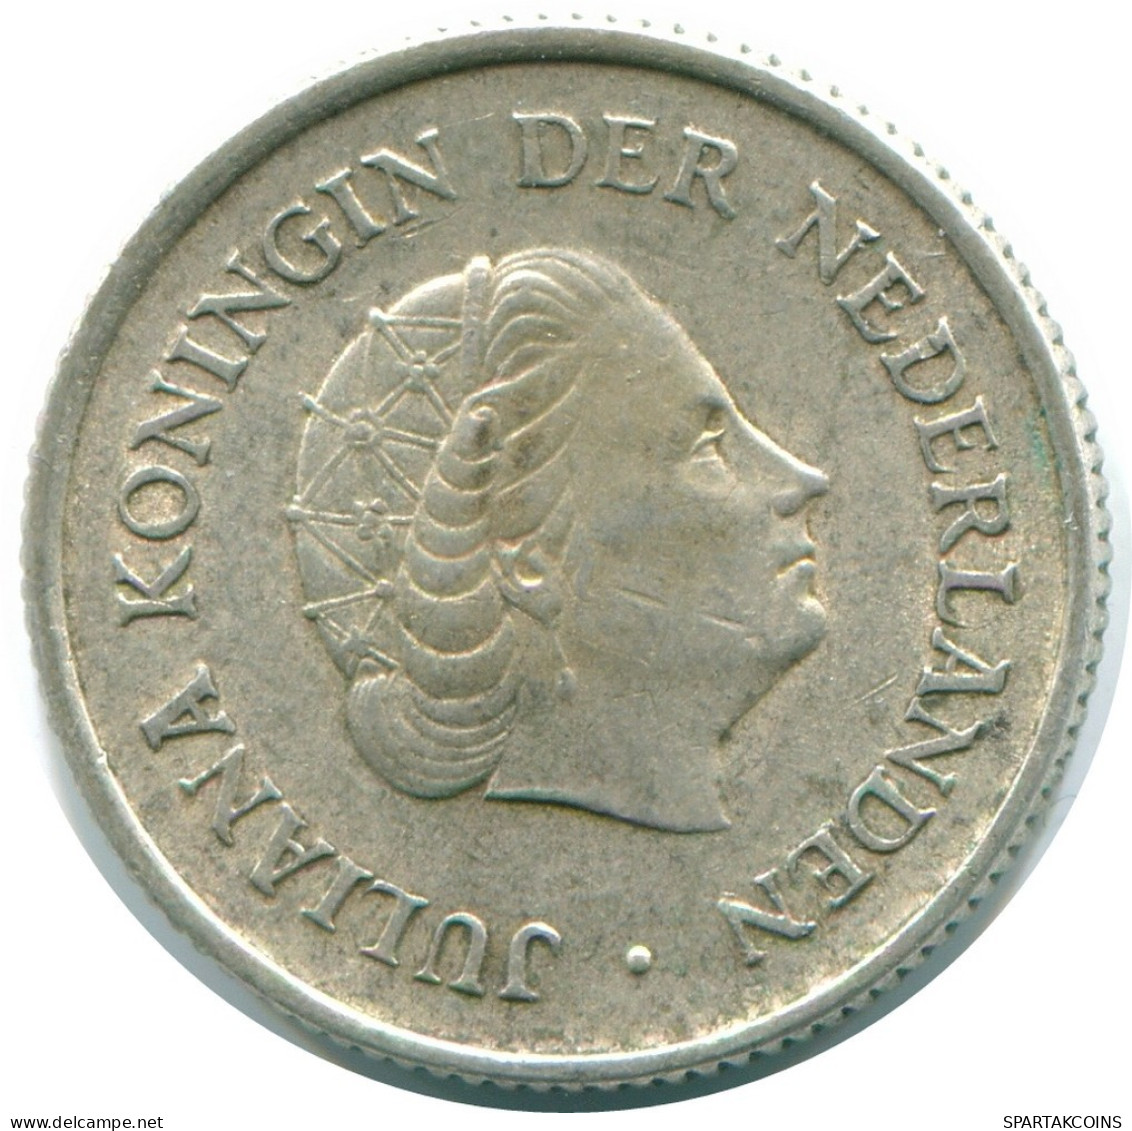 1/4 GULDEN 1965 NIEDERLÄNDISCHE ANTILLEN SILBER Koloniale Münze #NL11426.4.D.A - Niederländische Antillen